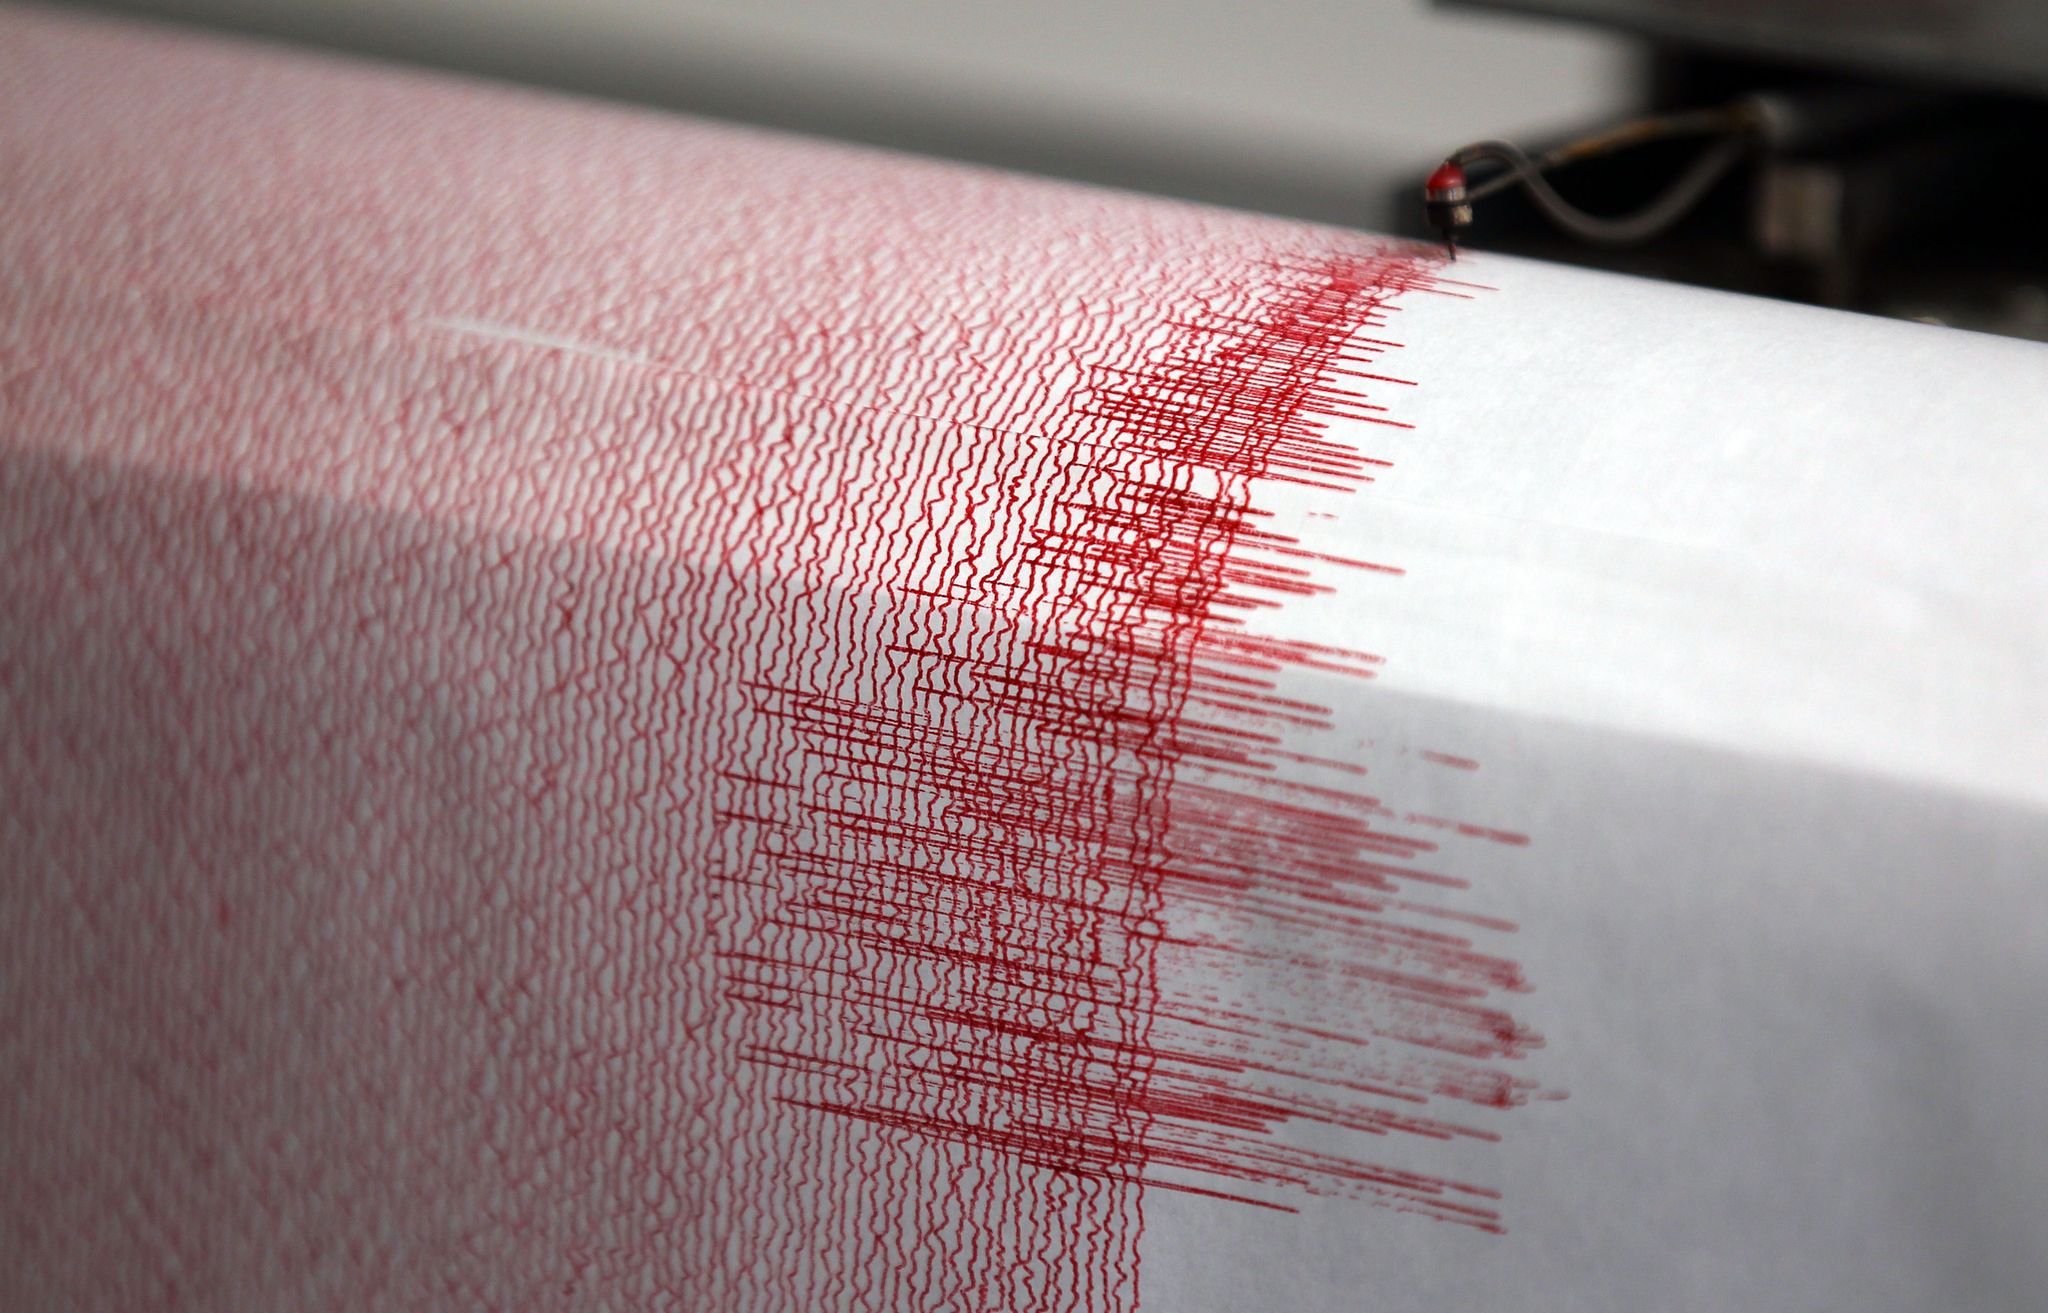 Erdbeben erschüttert Kreta – 5,3 auf der Richterskala